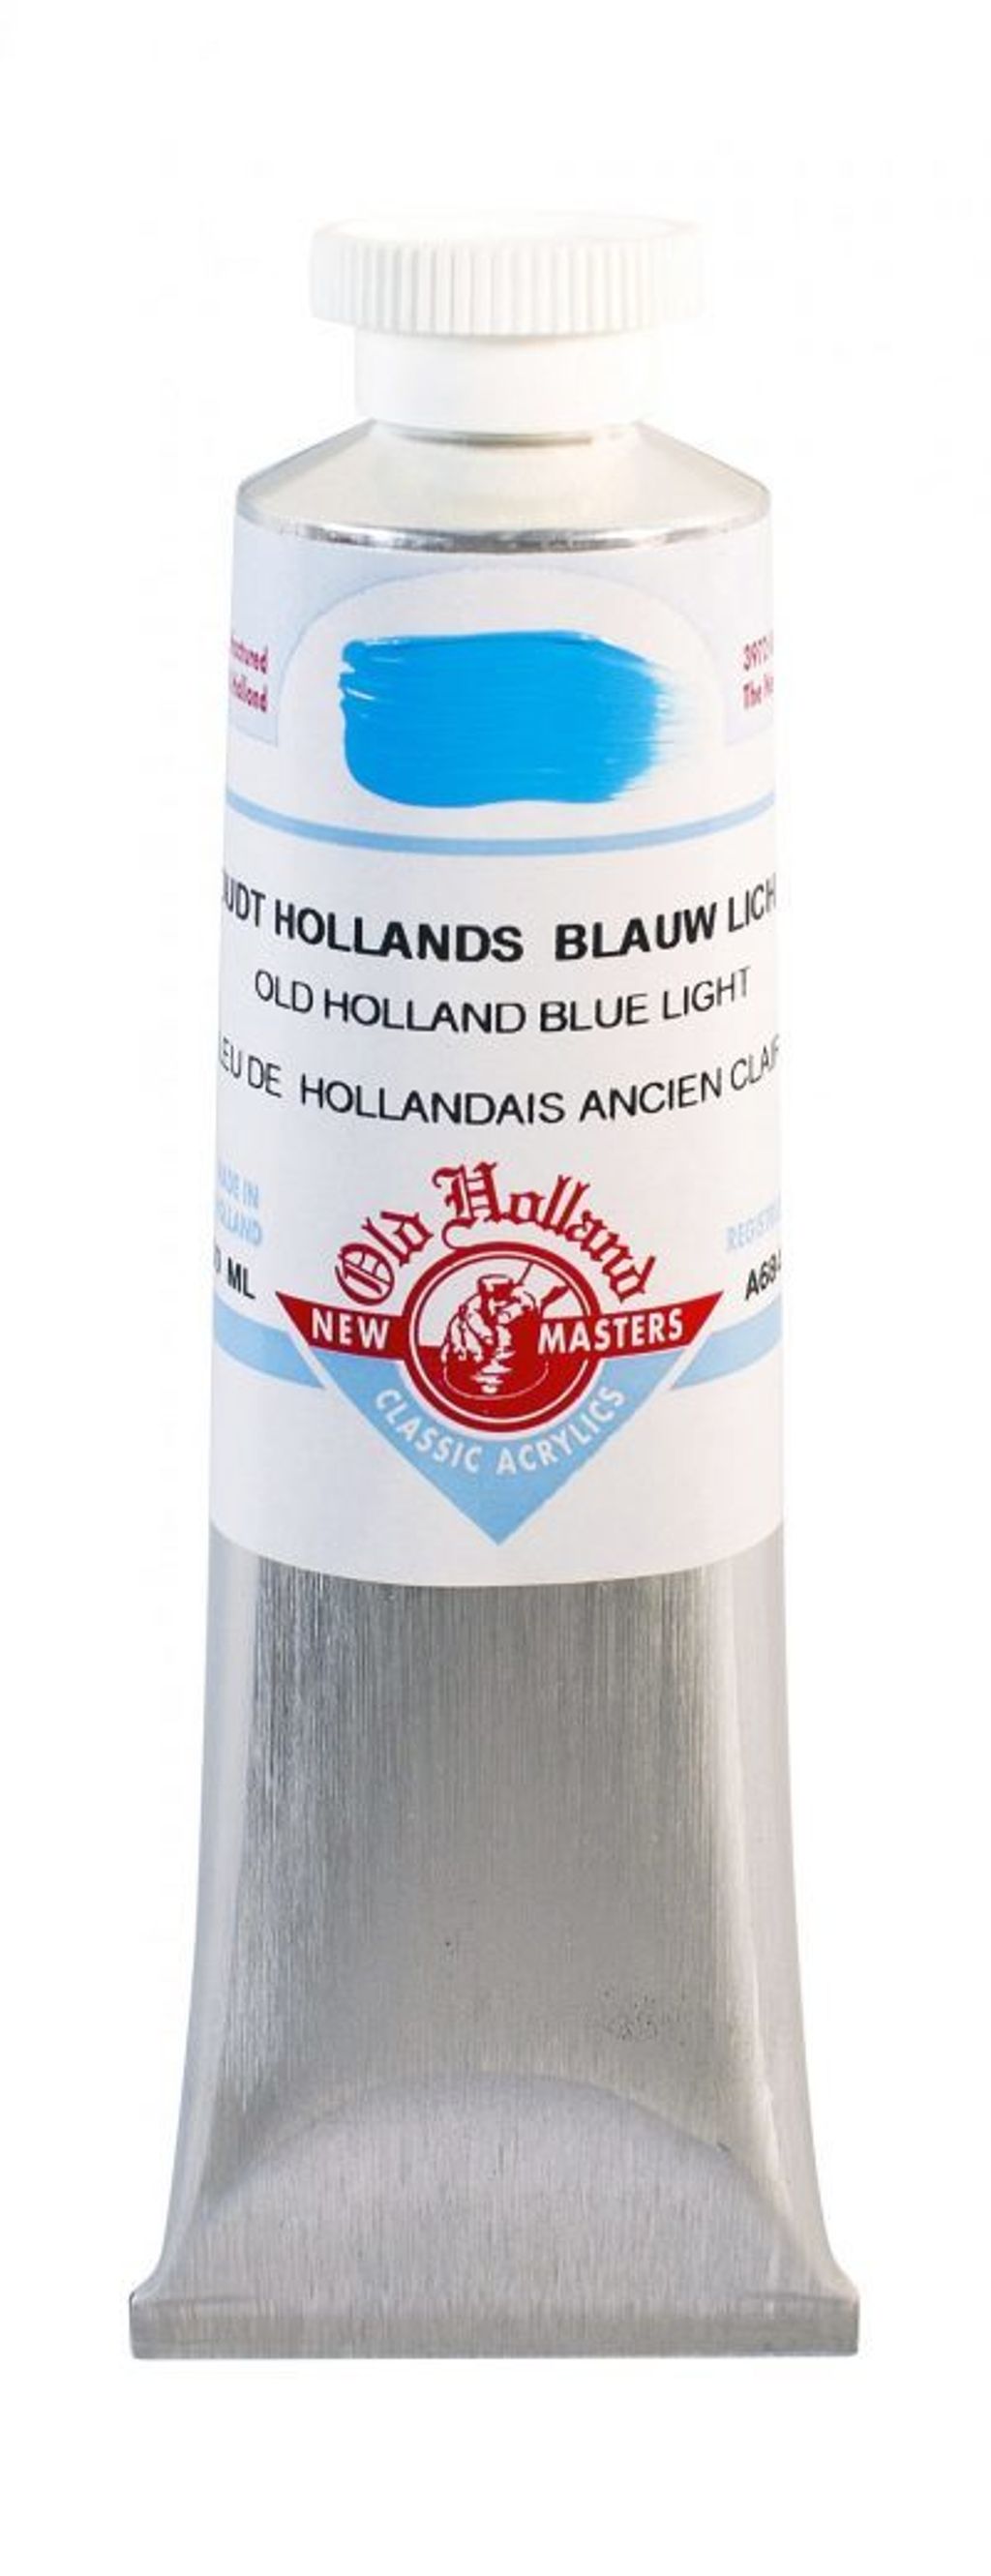 A684_Old_Holland_Blue_Light-400x1040.jpg